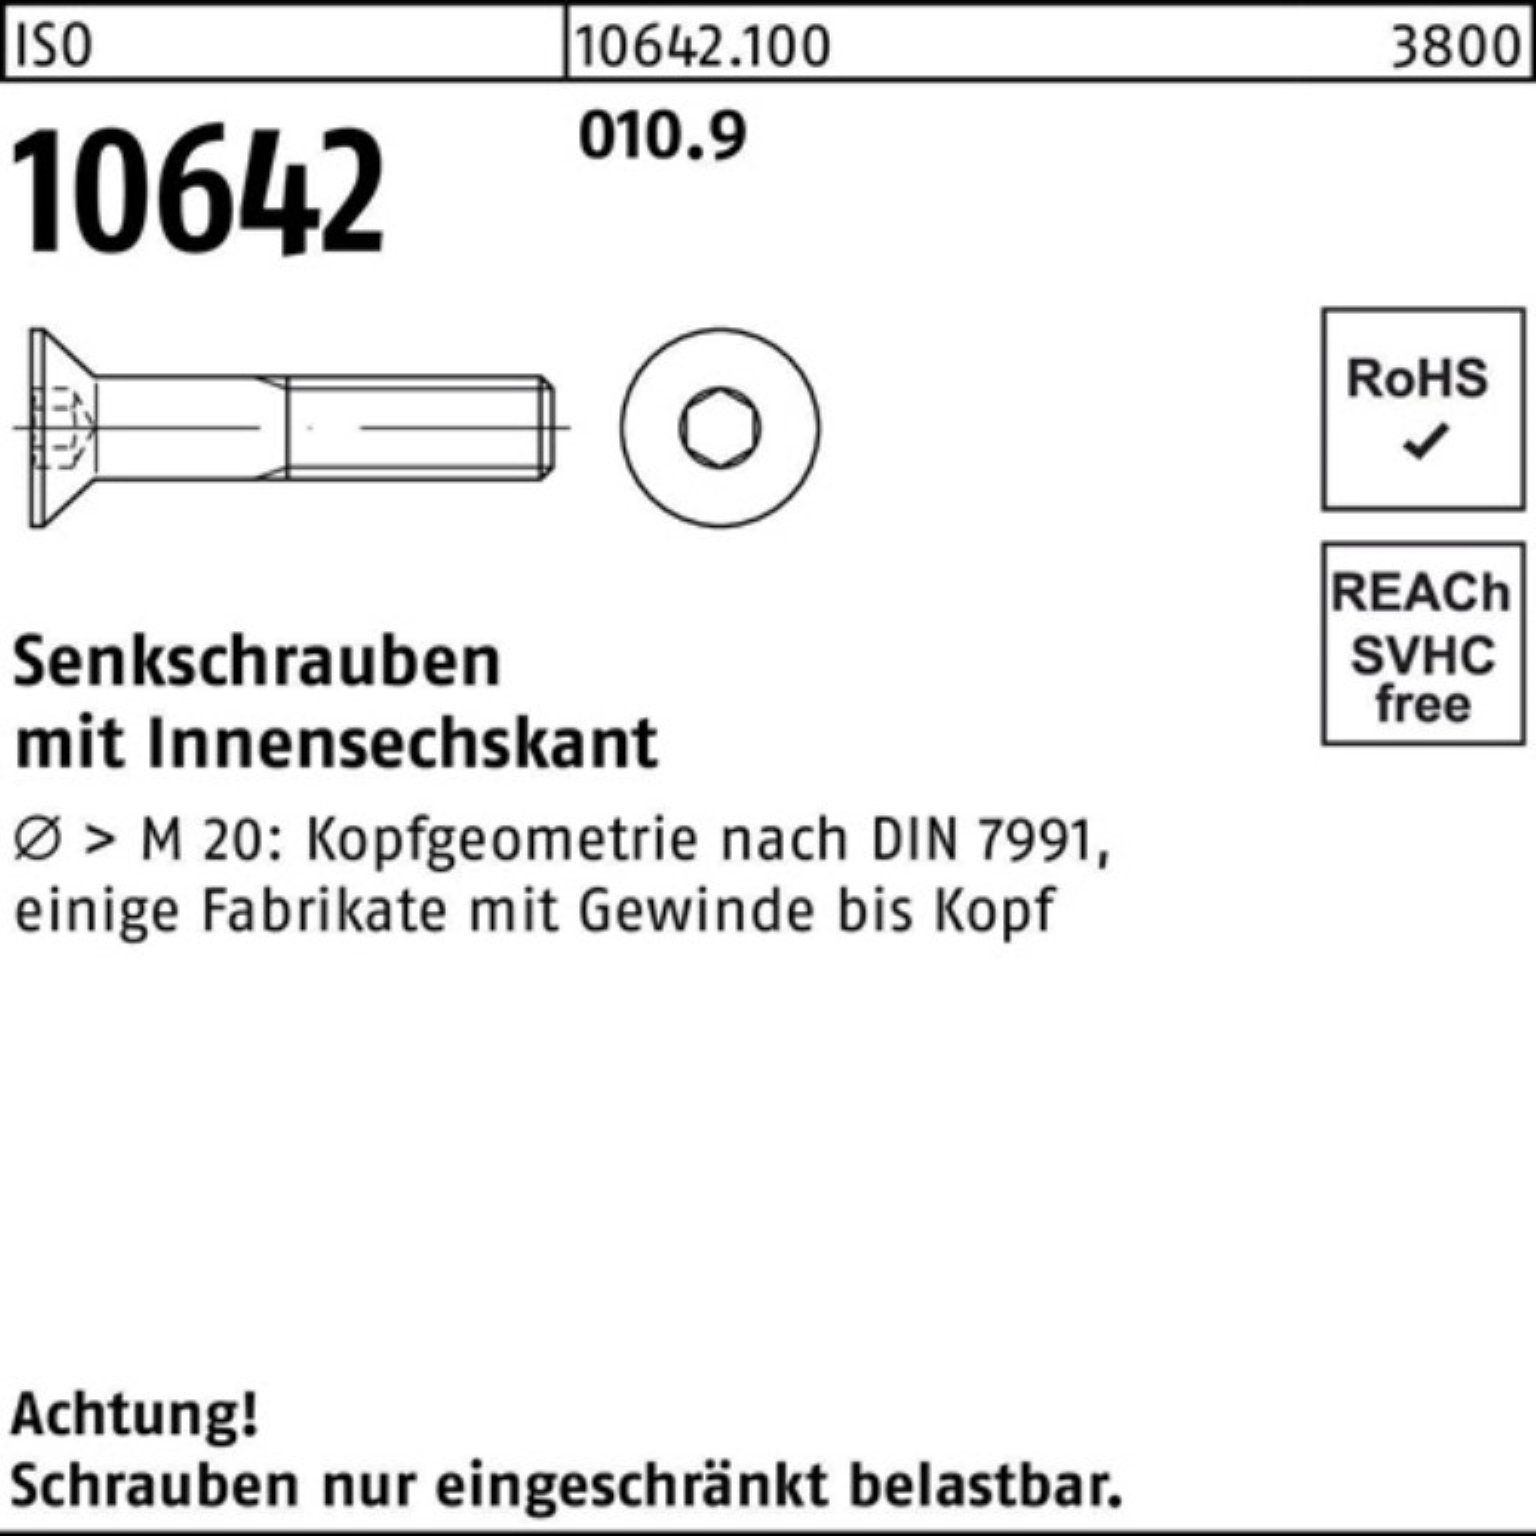 10642 Pack 010.9 200 Senkschraube Innen-6kt Reyher Senkschraube IS 200er 60 M8x Stück ISO